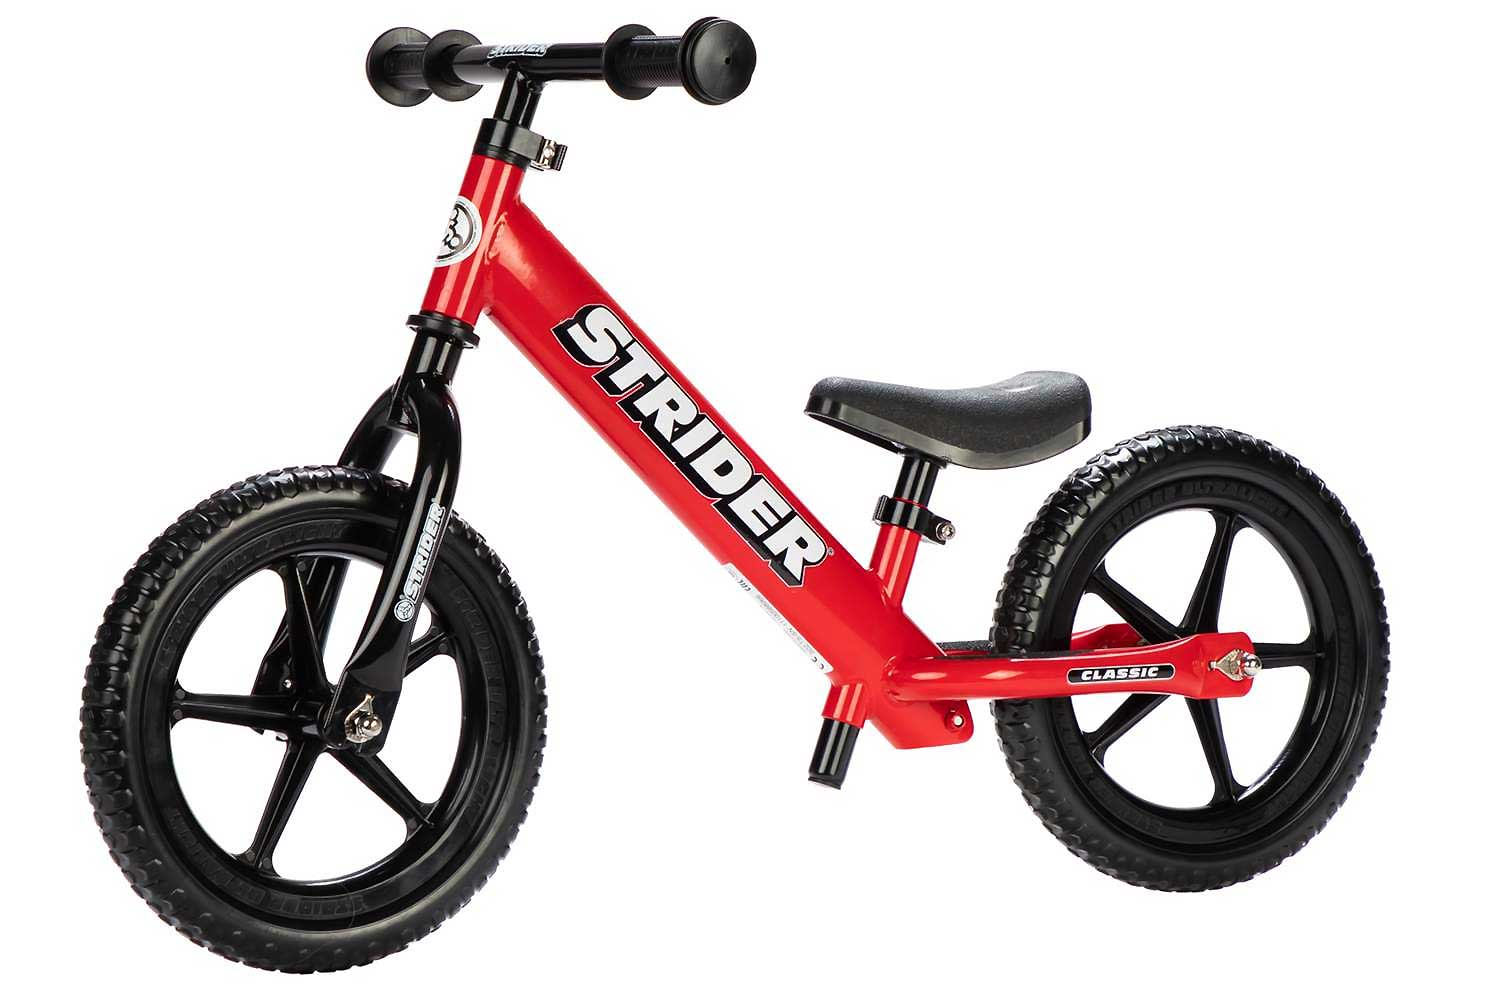 Græder missil uformel Strider 12 Classic Balance Bike - Kids Bike - Free Shipping Over $200